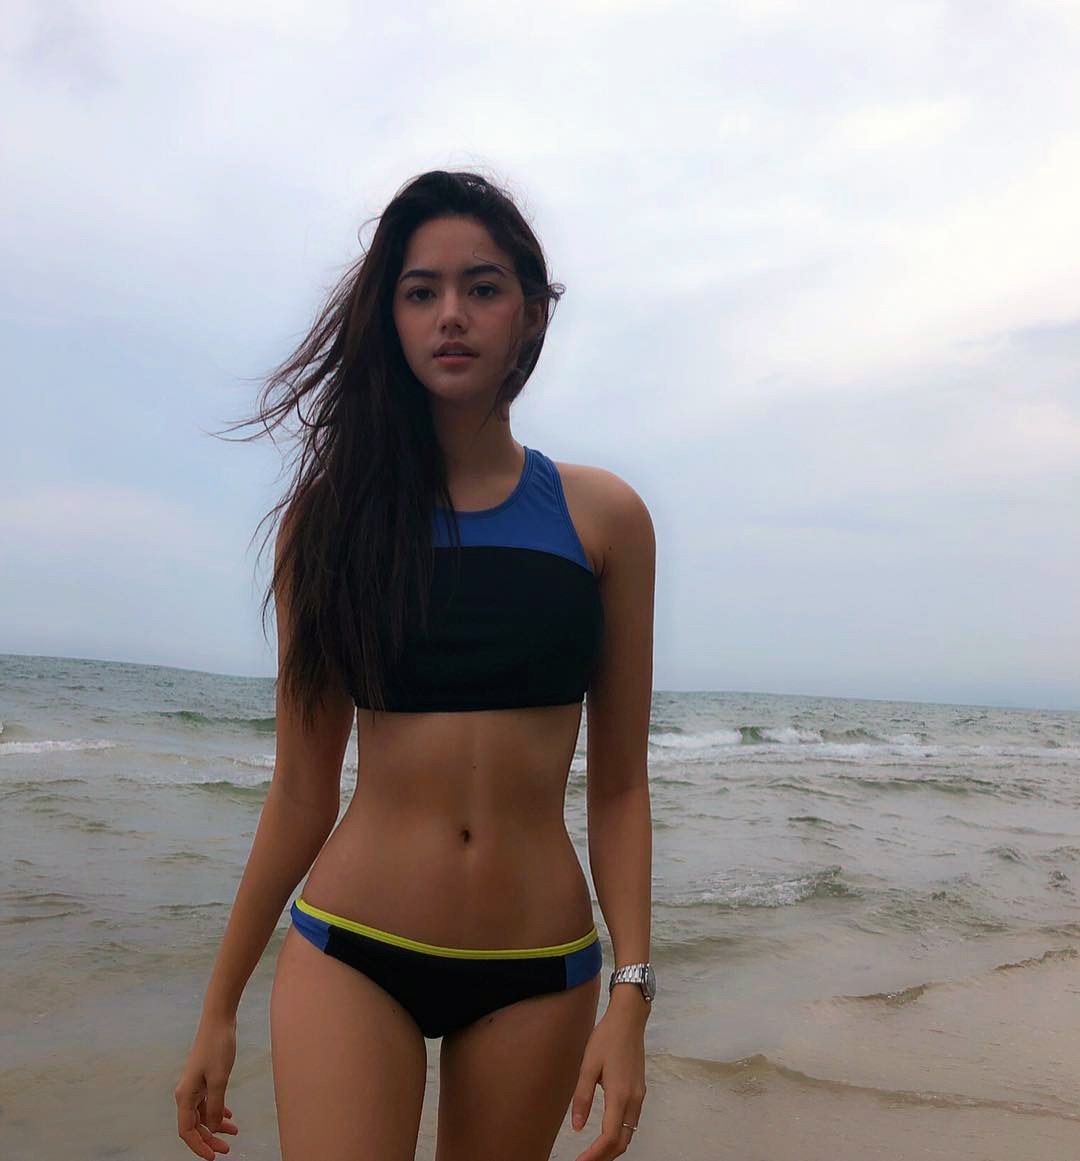 Thai Bar Girl At The Beach